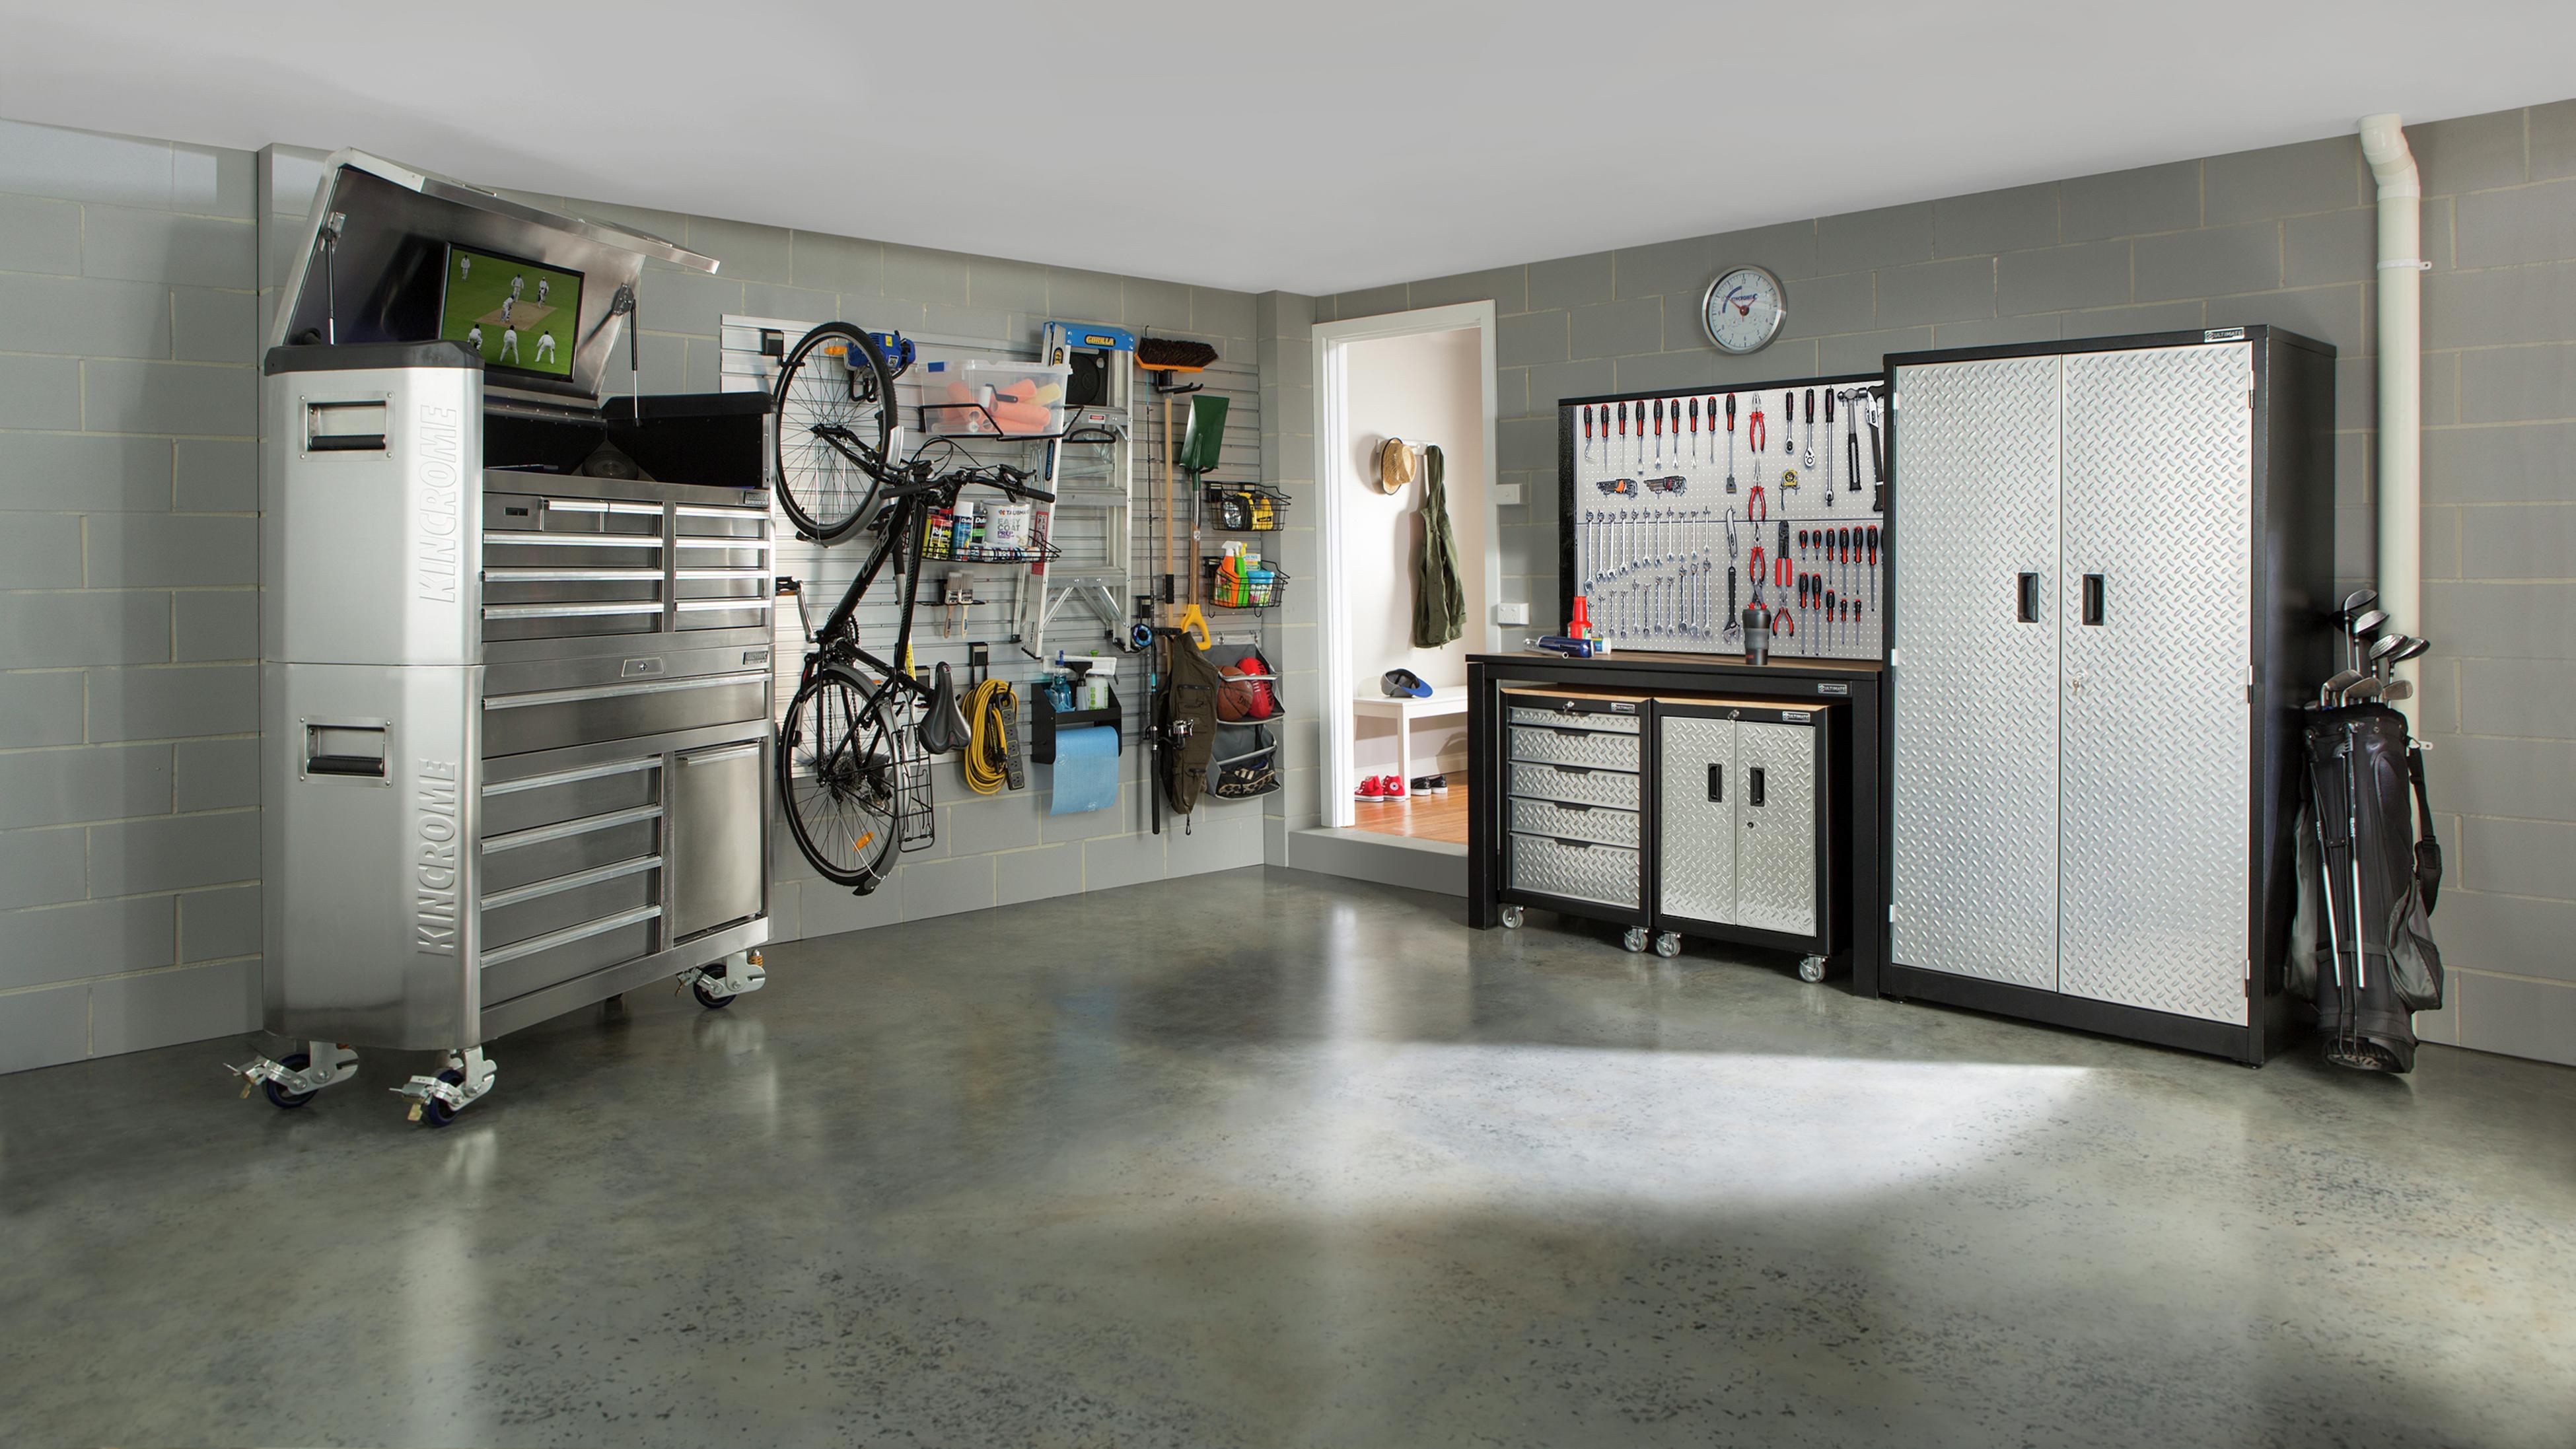 garage ideas storage